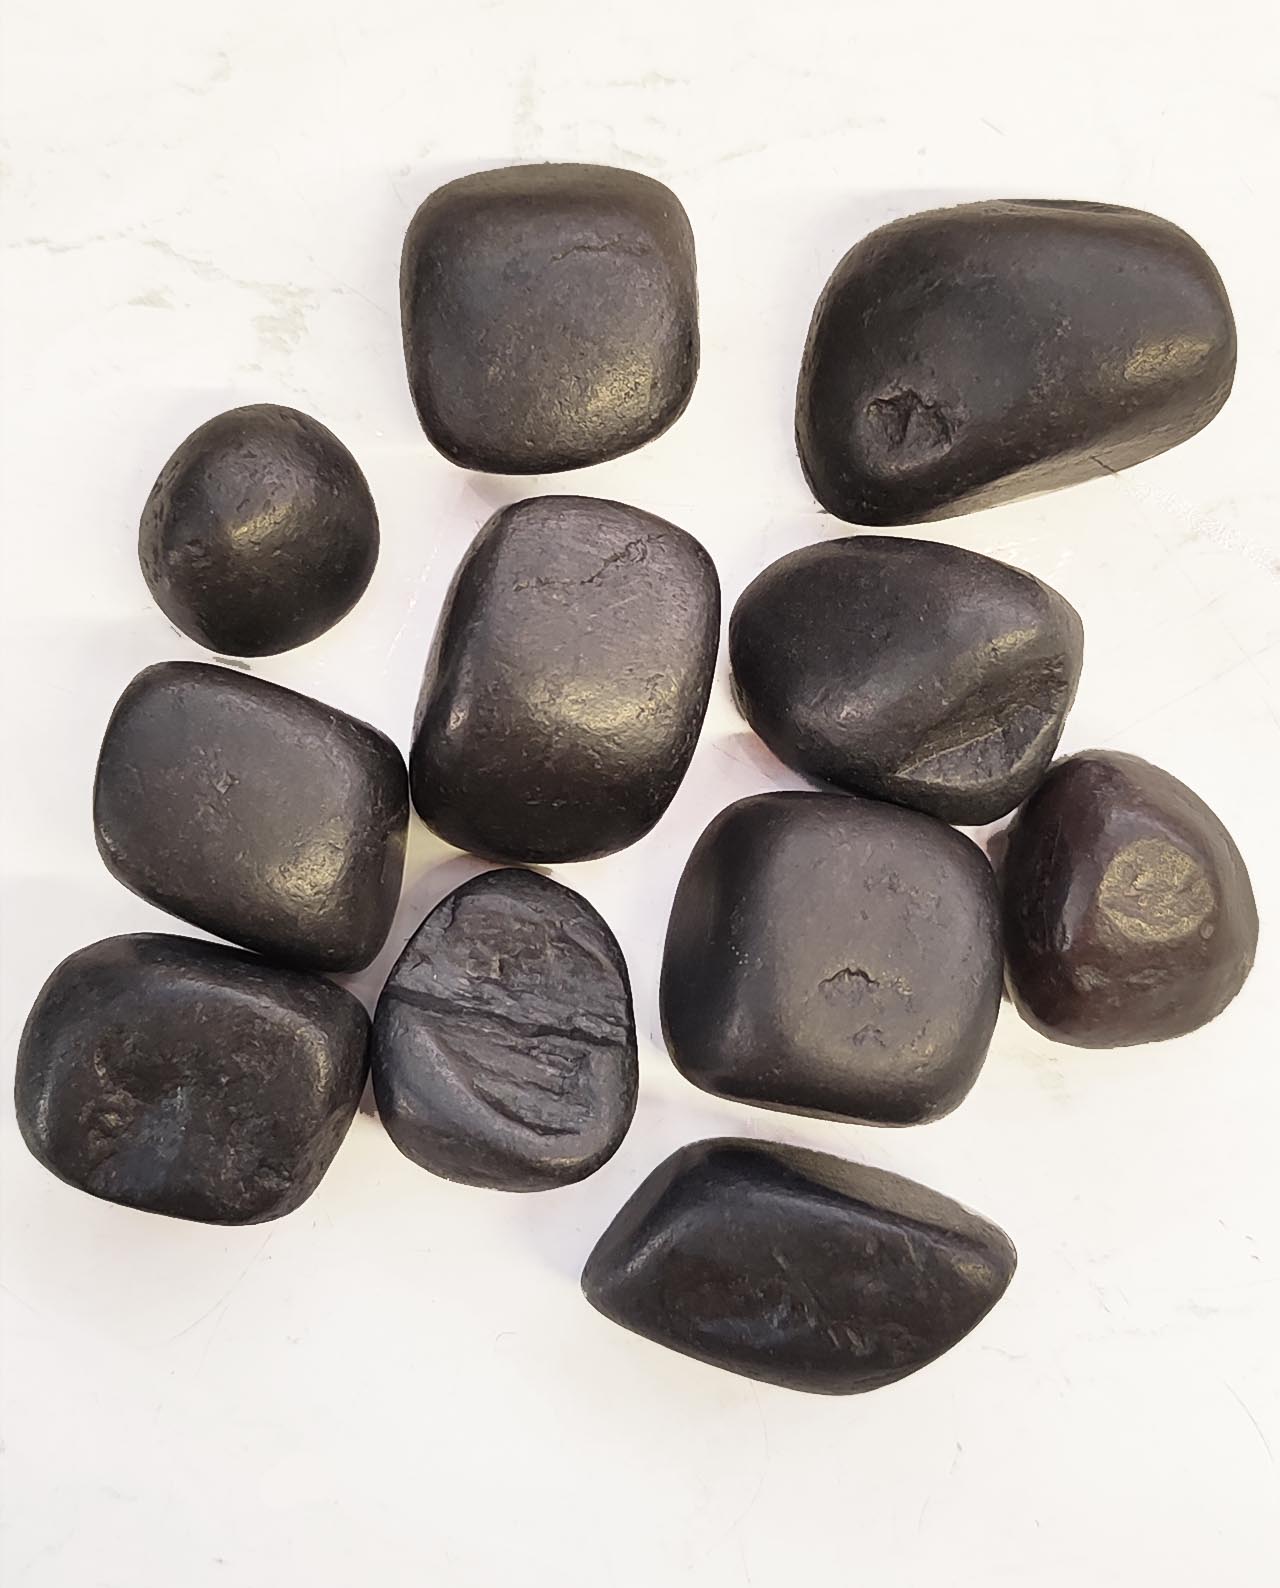 Comprar Shungit shungita piedra rodado calidad extra SHR1A